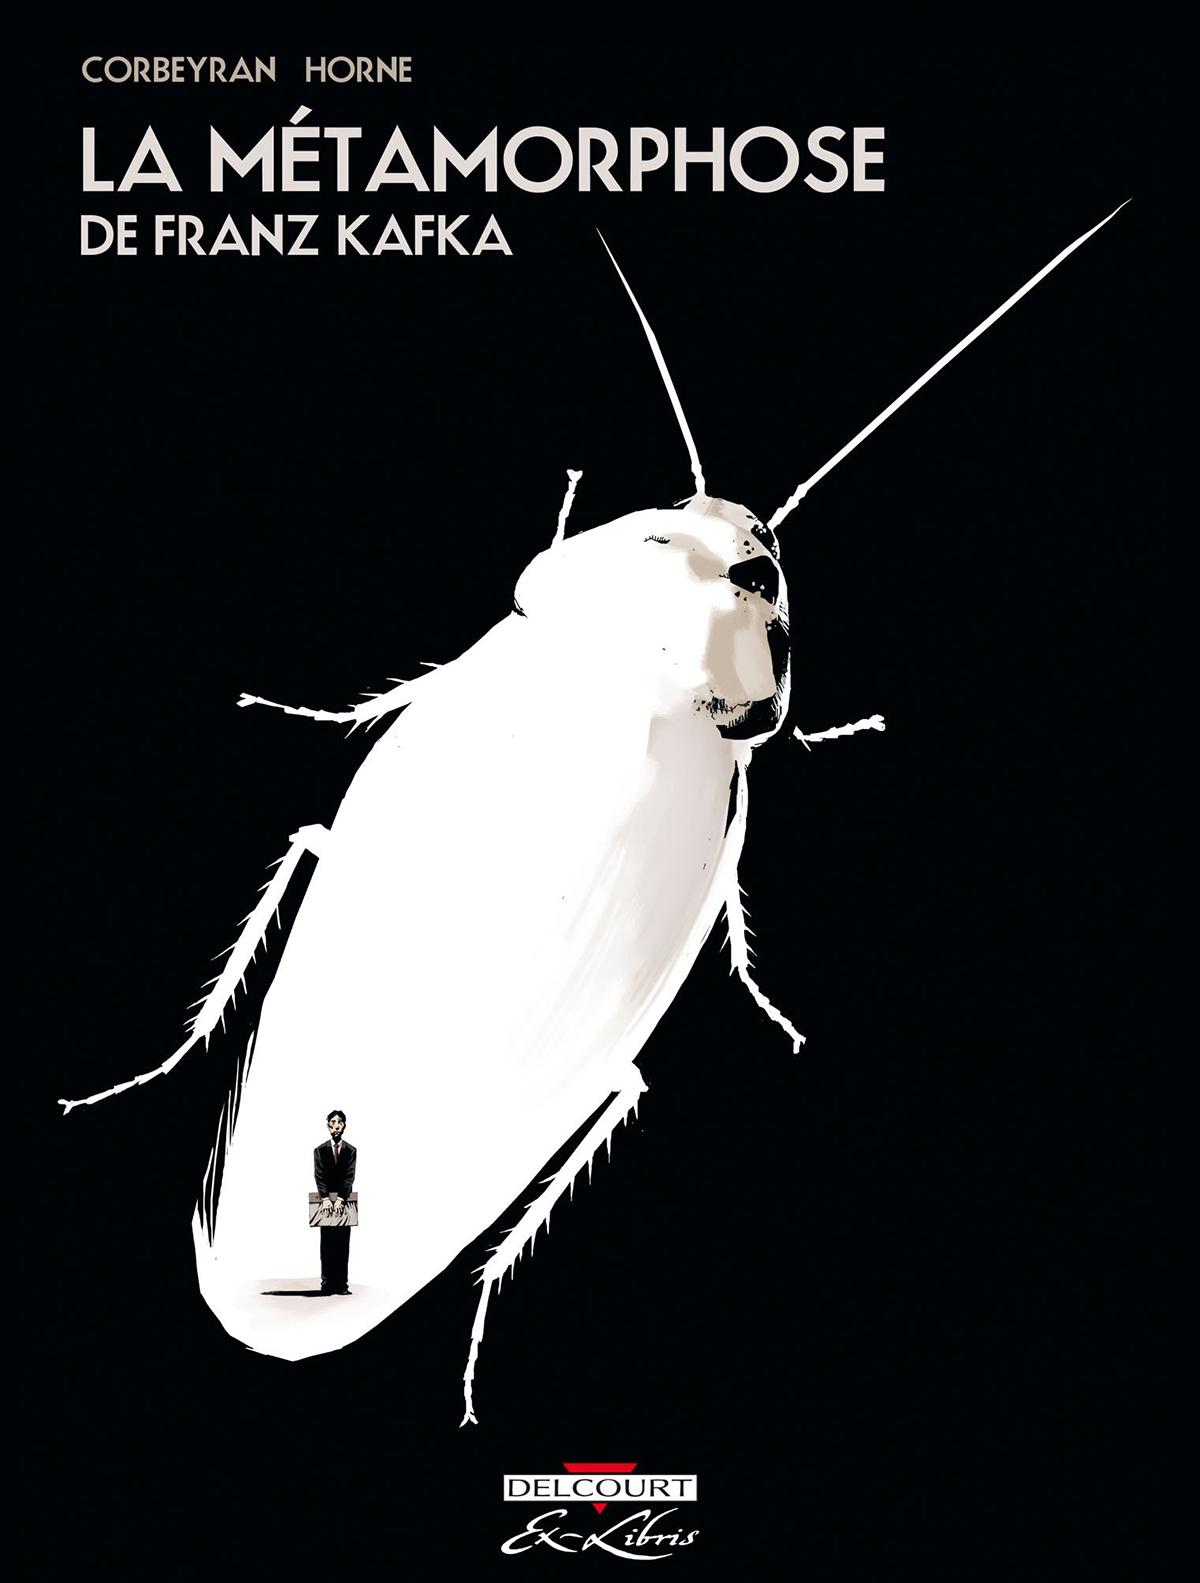 Une des couvertures du livre "La Métamorphose" de Franz Kafka. [Delcourt]